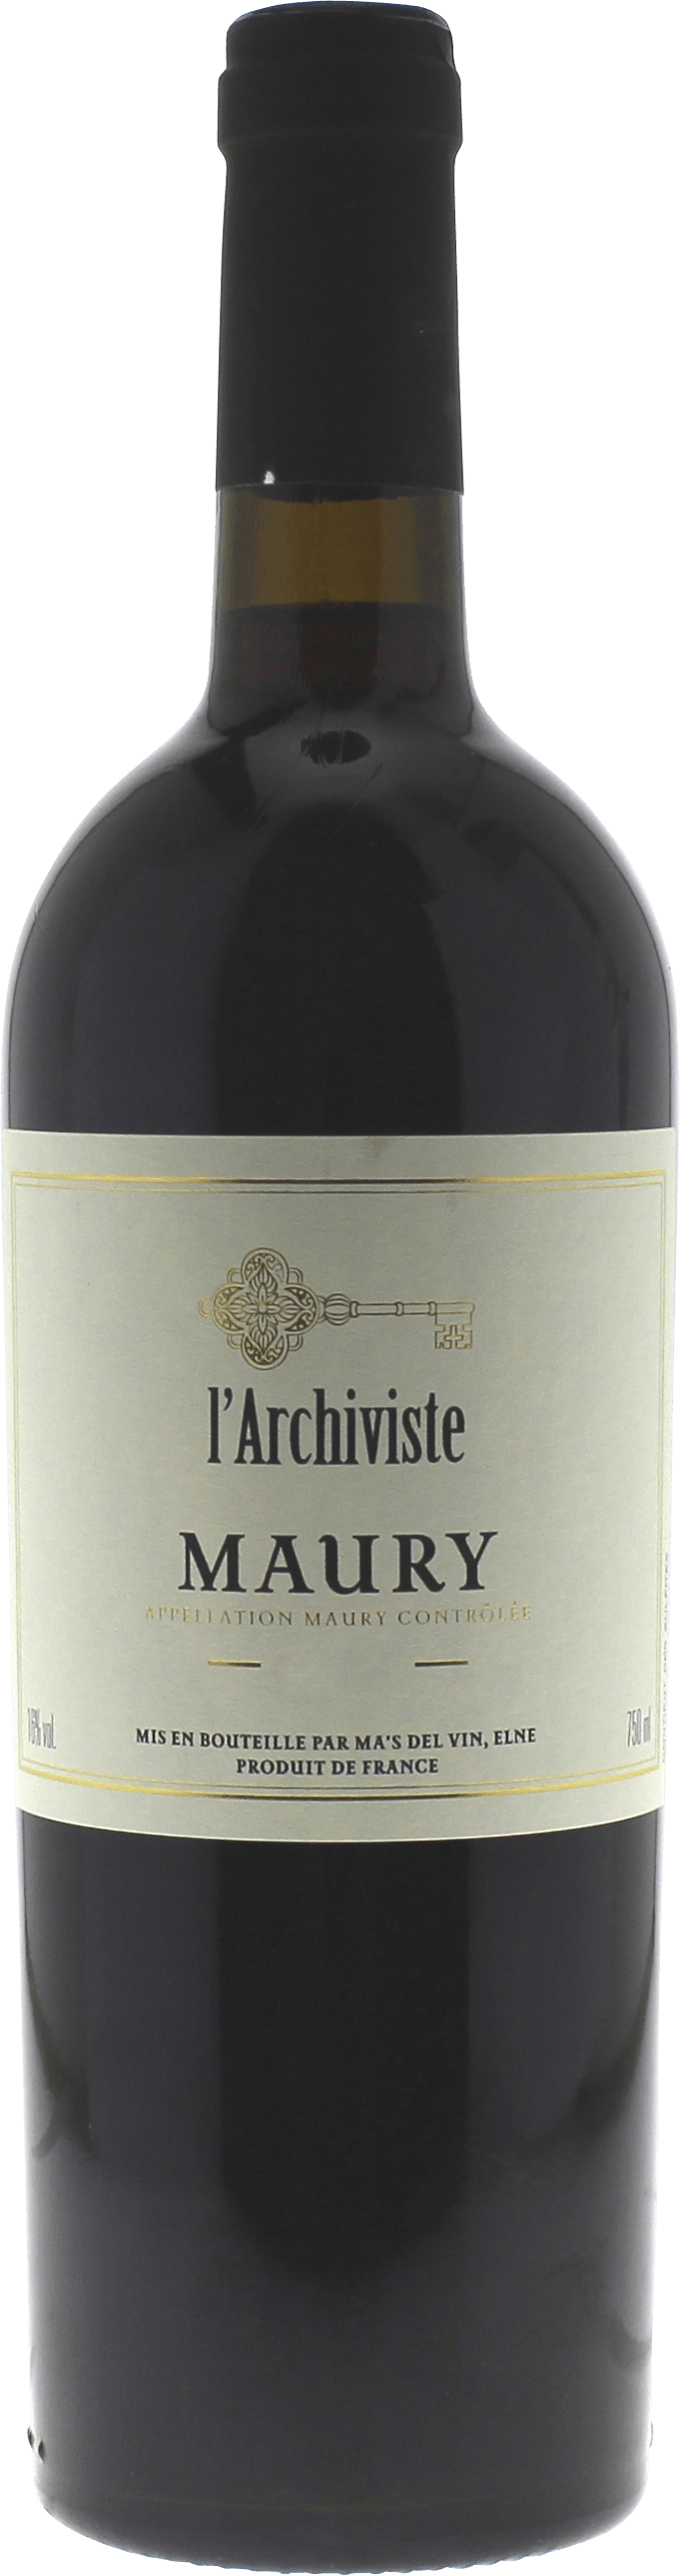 Maury l'archiviste 1974 Vin doux naturel Rivesaltes, Vin doux naturel